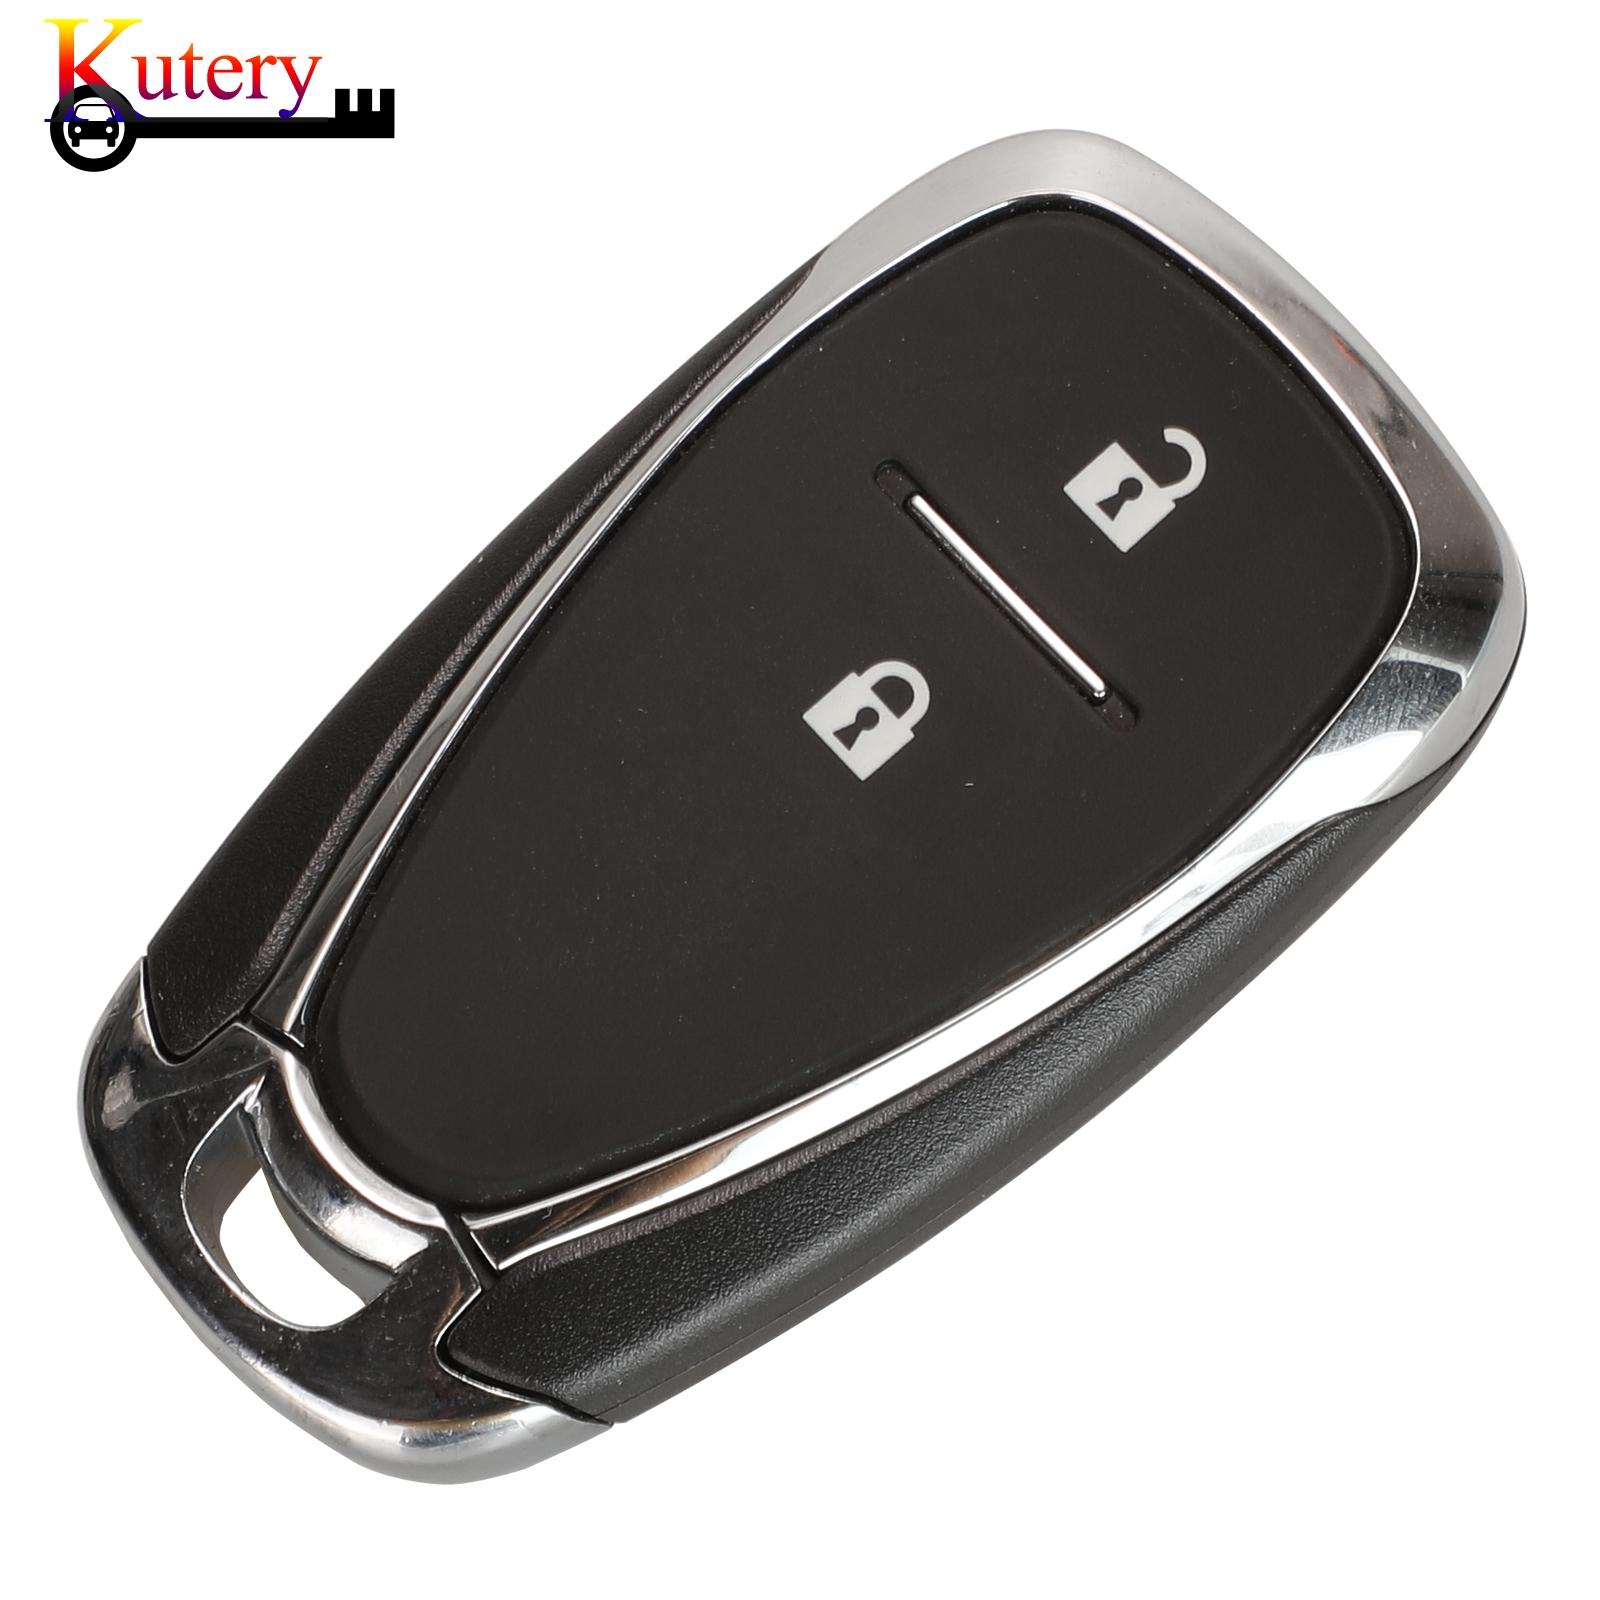 Изображение товара: Оригинальный дистанционный умный Автомобильный ключ Kutery для Chevrolet 2/3/4/5 кнопок без ключа-Go FCCID: HYQ4AA/HYQ4EA 315/433MHZ ID46 чип